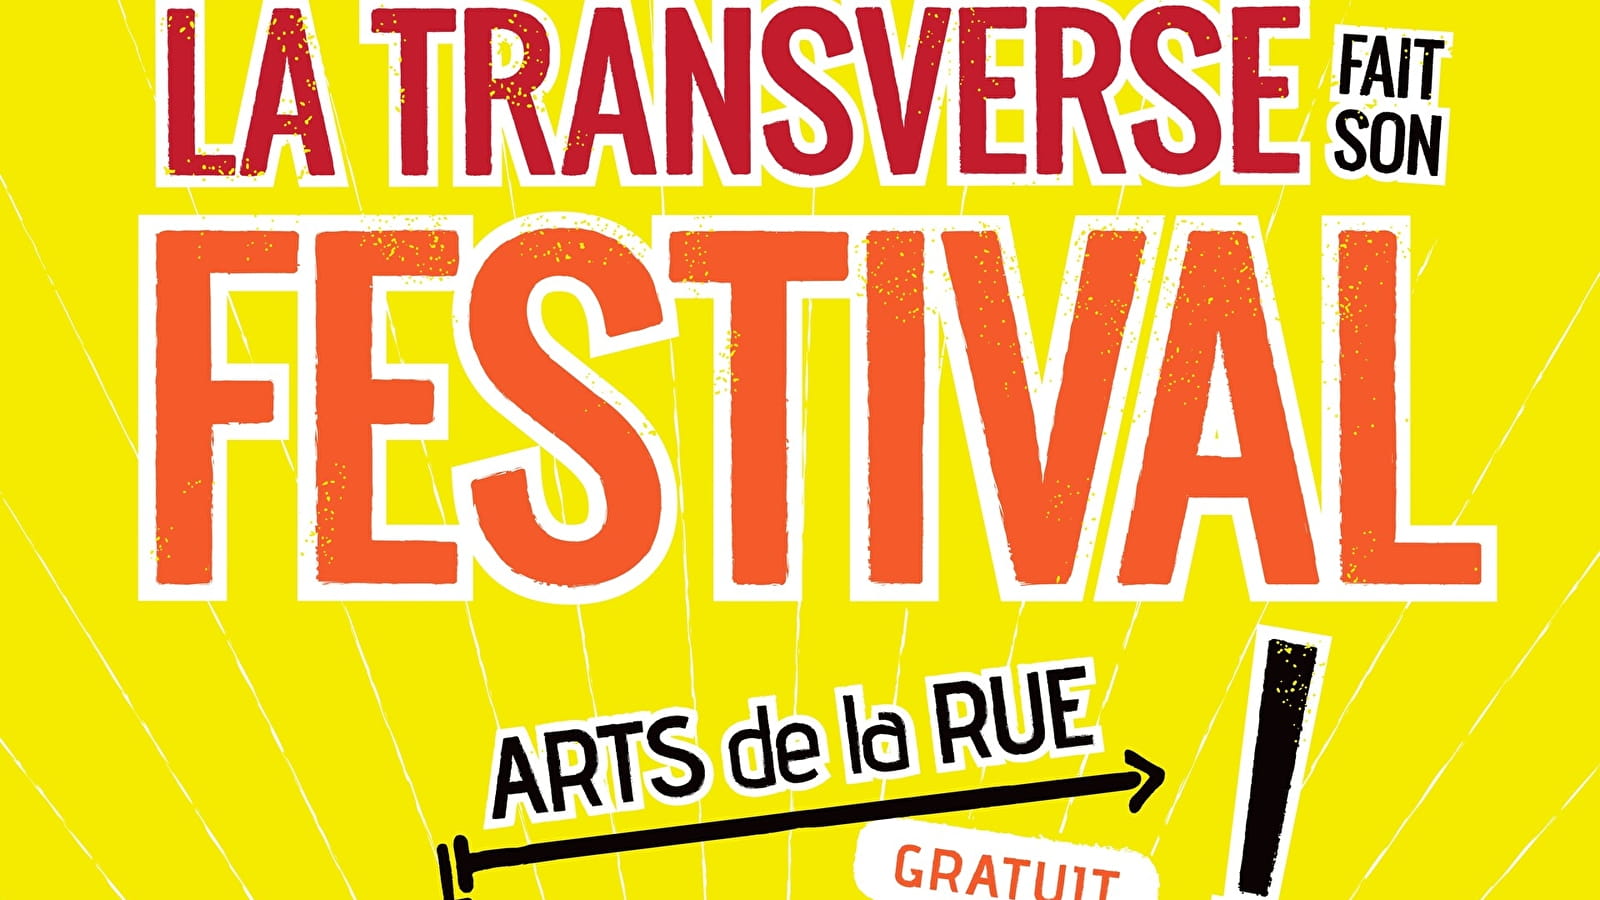 La transverse is having a festival! in Lormes